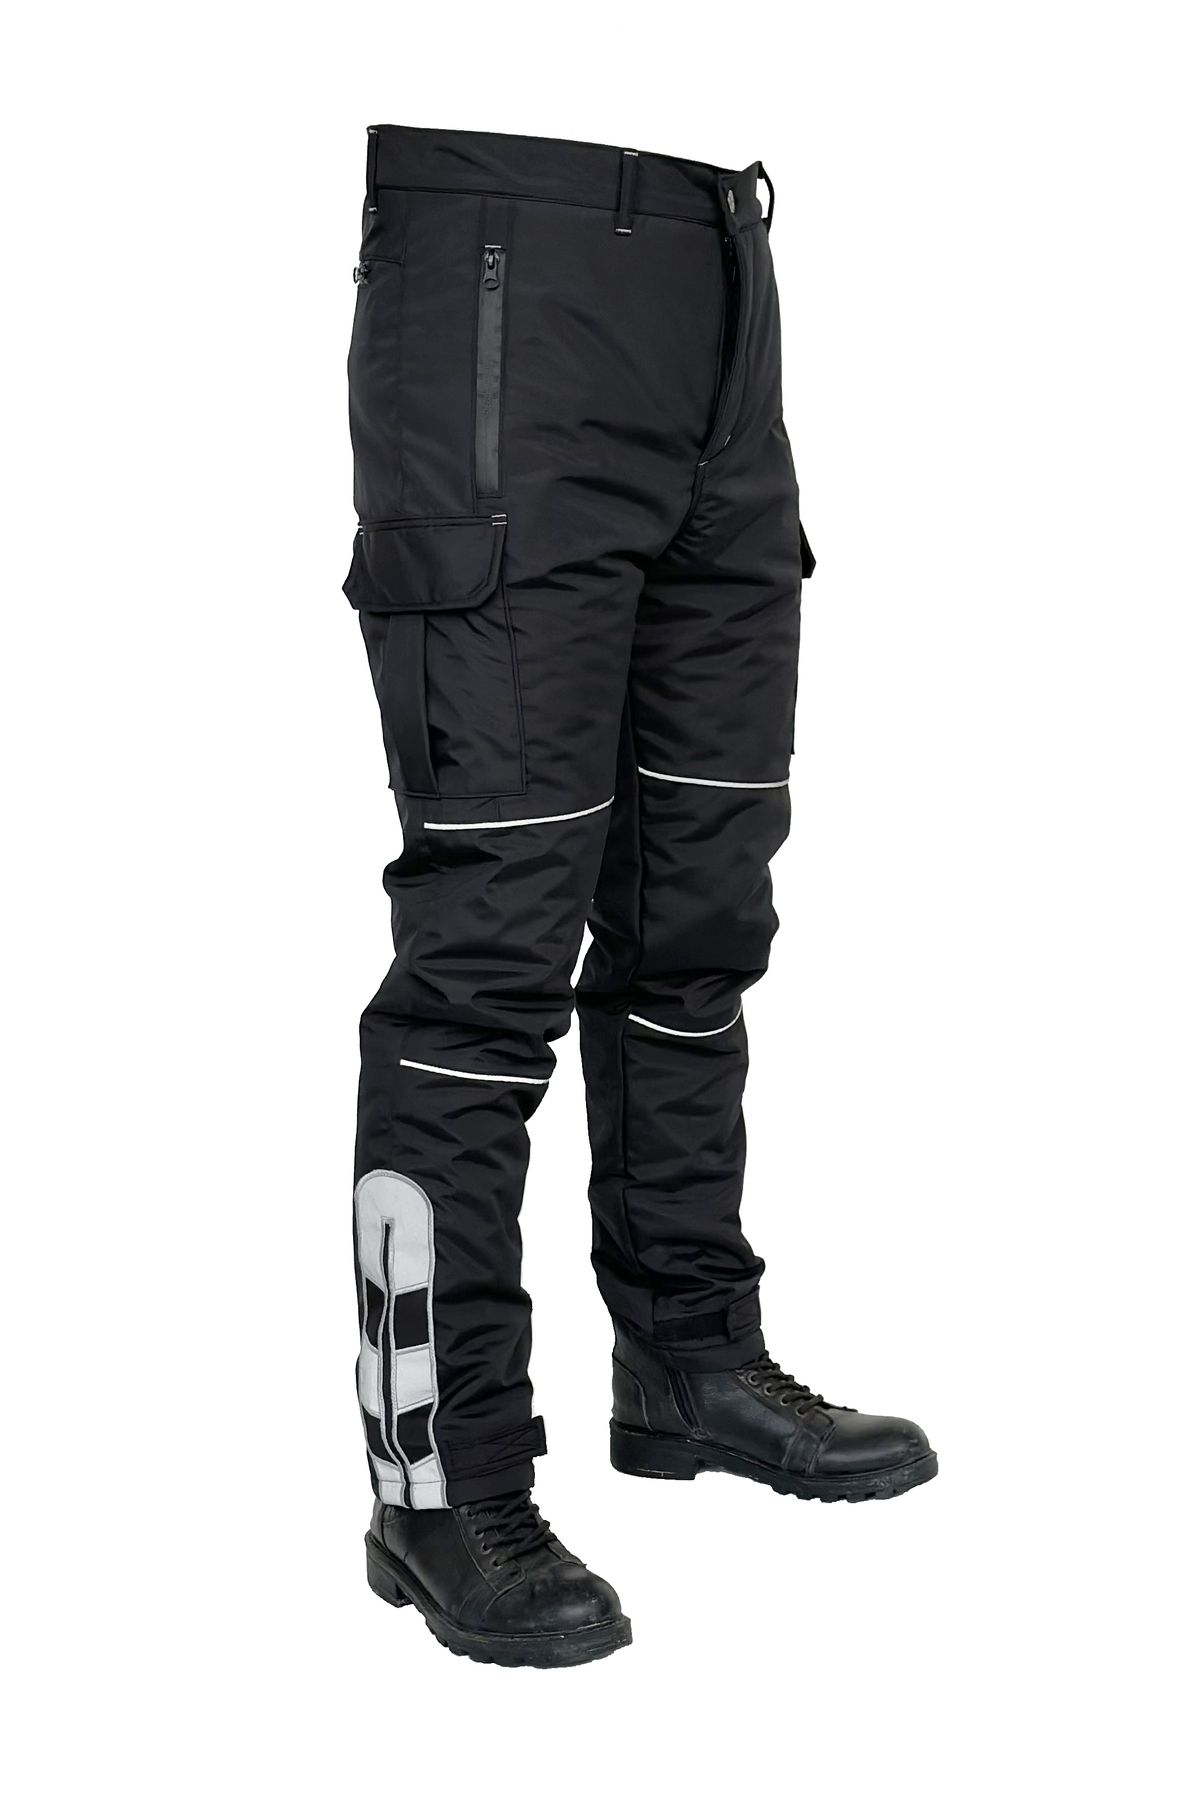 DRC Outdoor Rüzgar Geçirmez Kışlık Siyah Motorcu Pantolonu ( Yeni Yasaya Uygun )